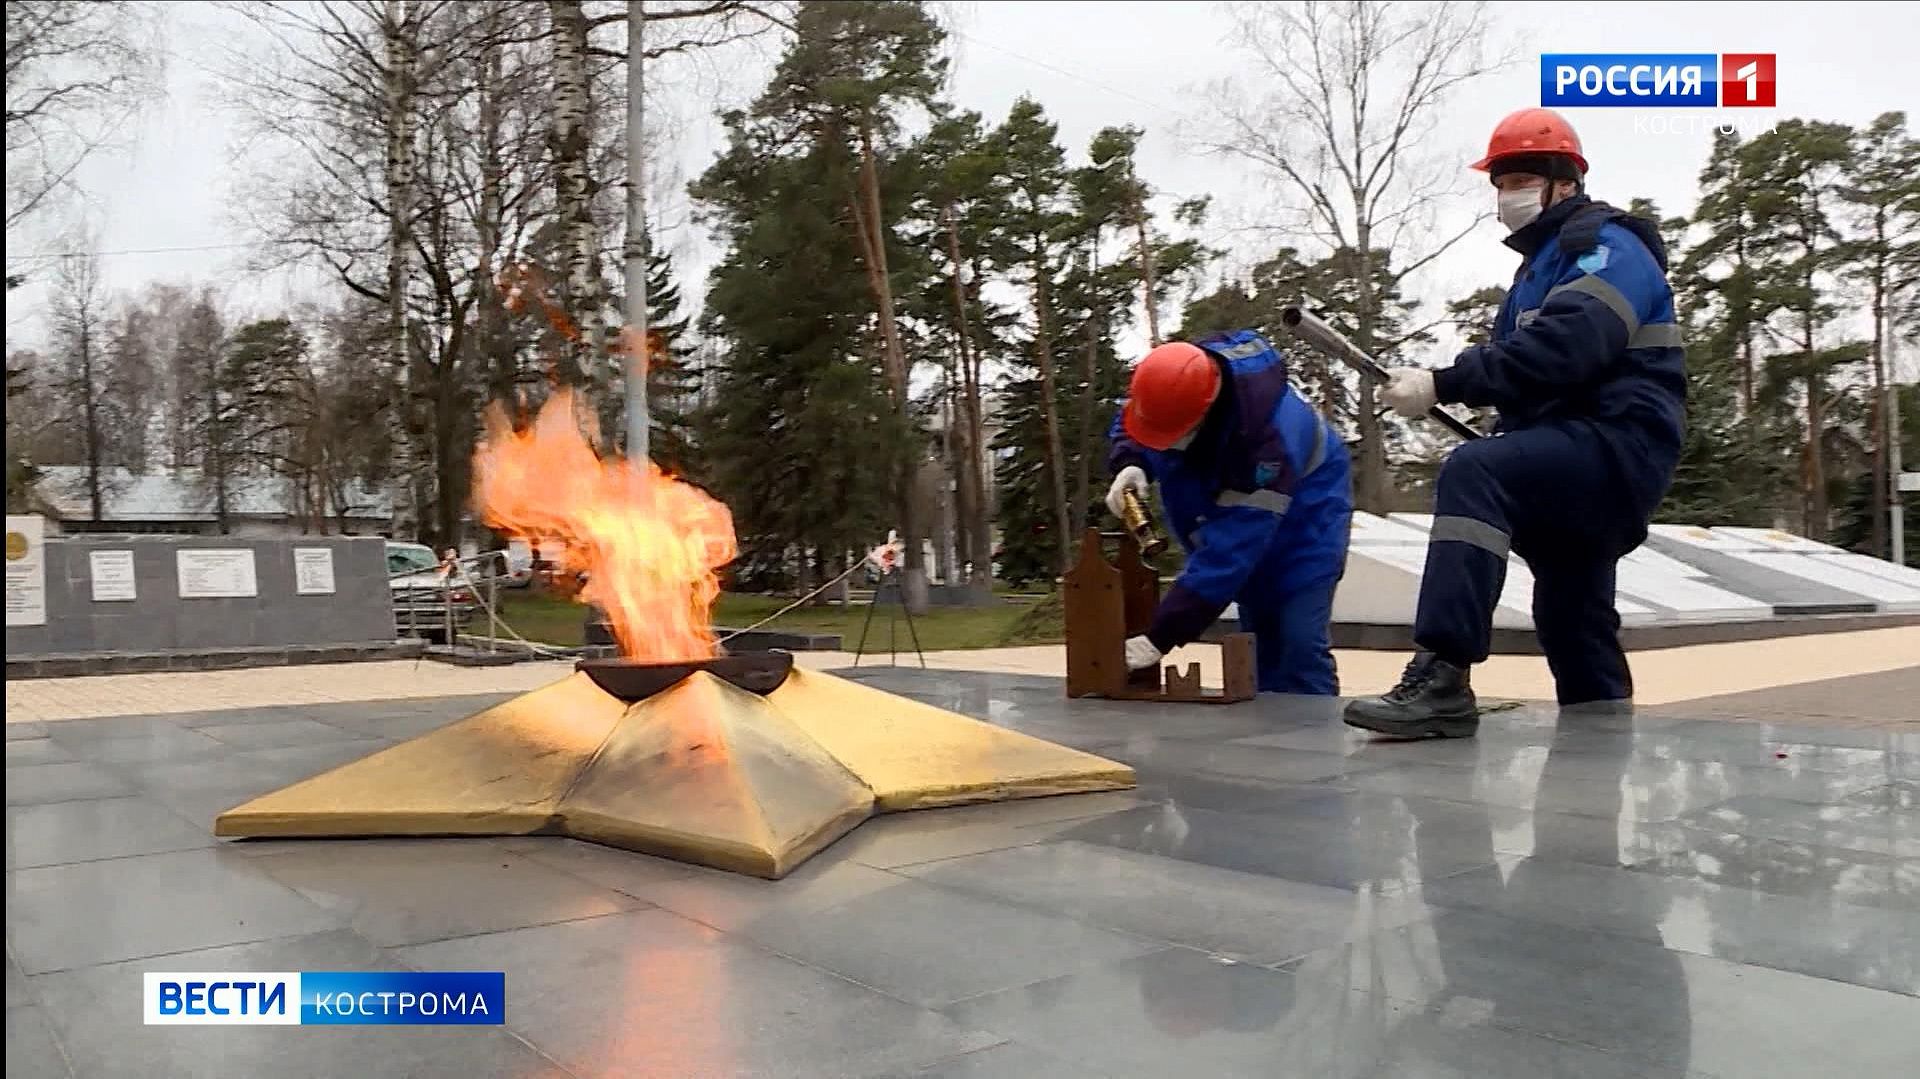 Костромские газовики показали, как готовят к празднику Вечный огонь 